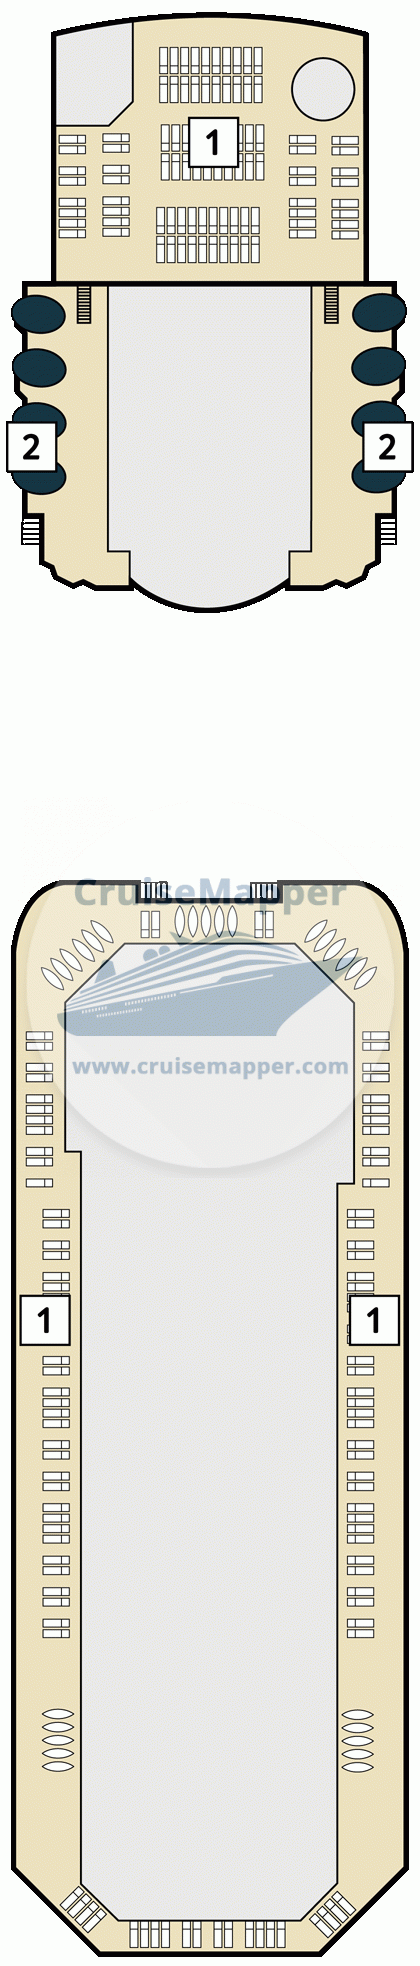 Mein Schiff Herz-Marella Voyager Deck 24 - Marella Voyager-deck14-Teens-Sundeck